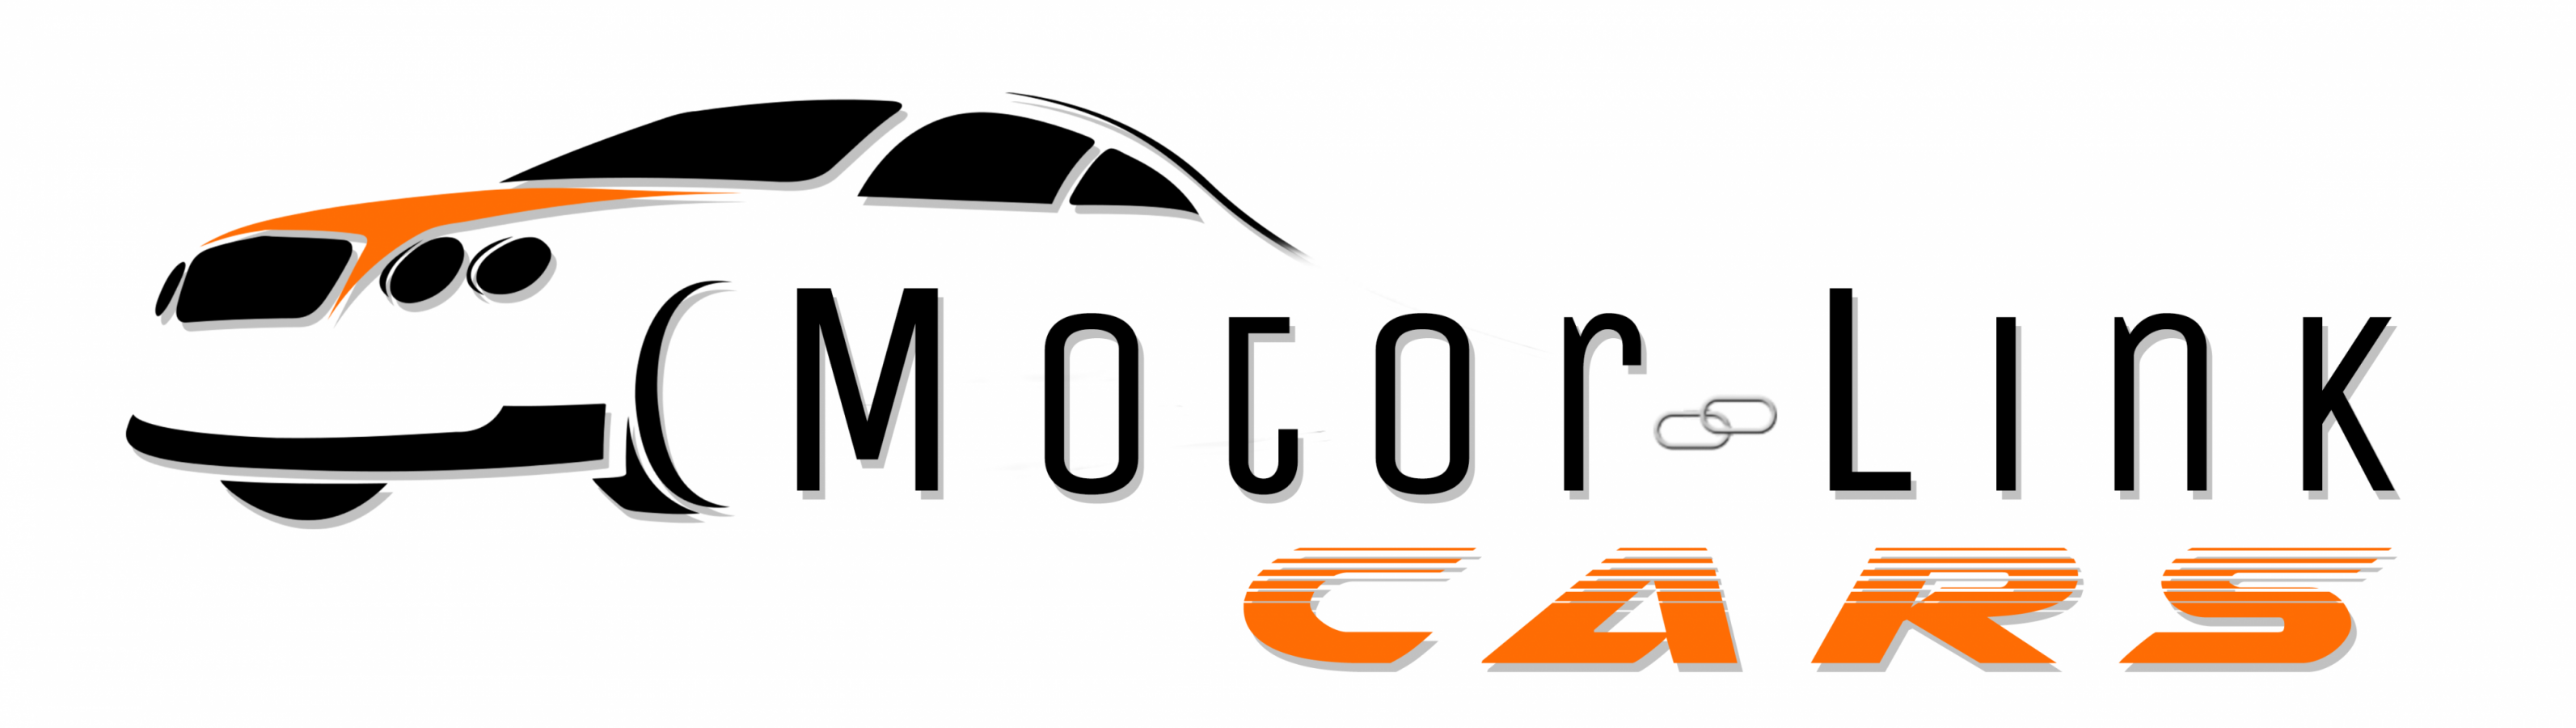 Motorlink Cars Logo